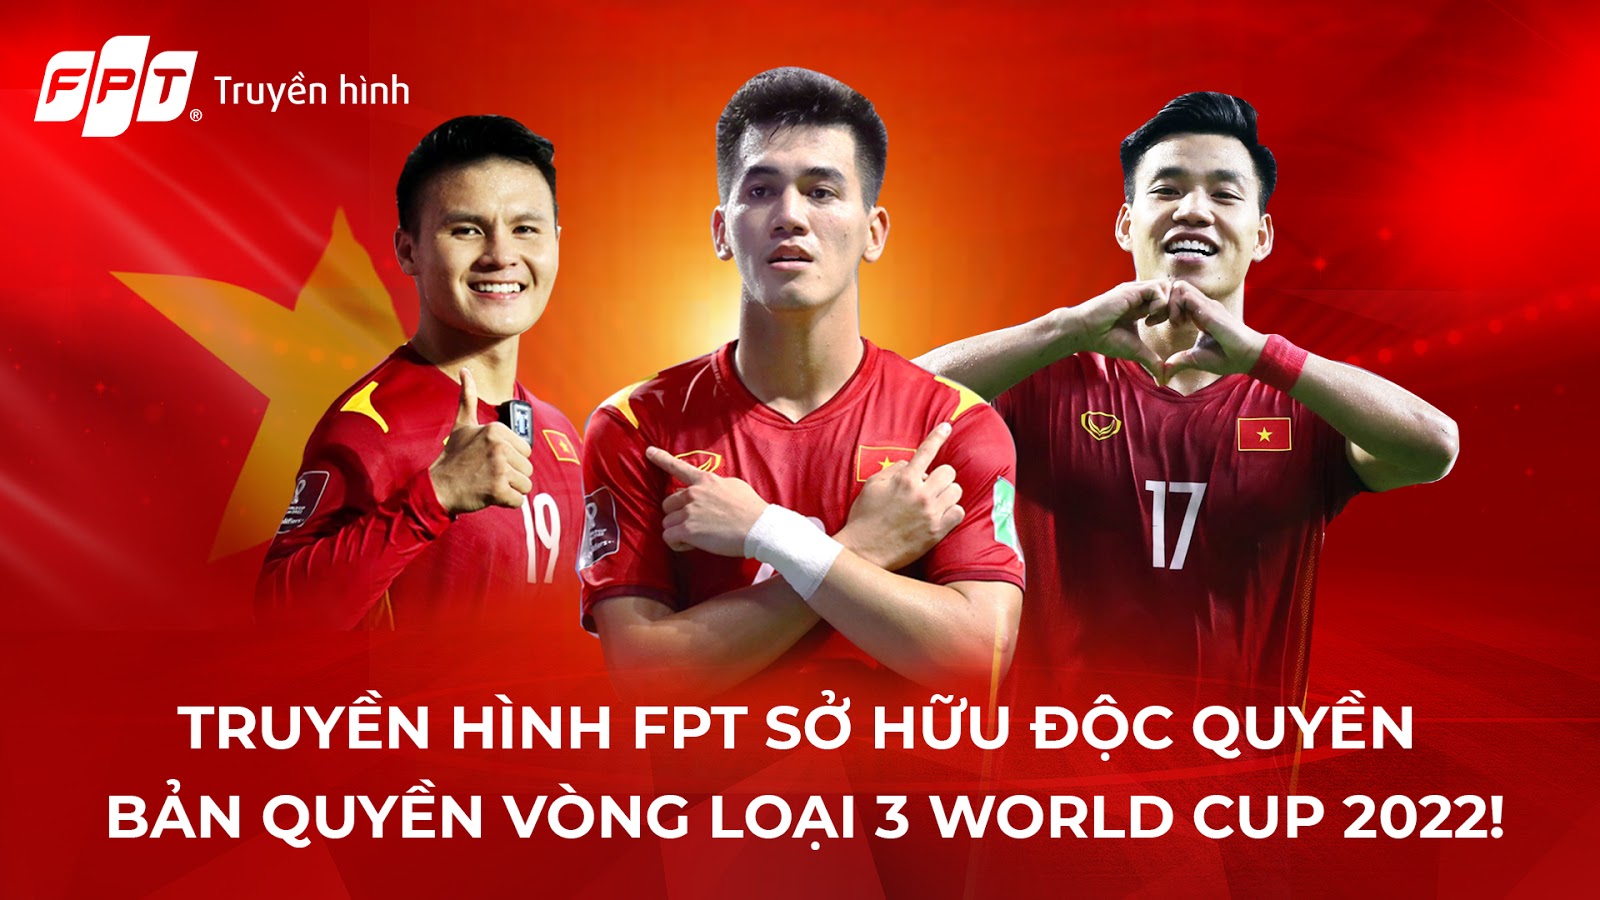 Xem đội tuyển Việt Nam đá Vòng loại cuối cùng World Cup 2022 khu vực